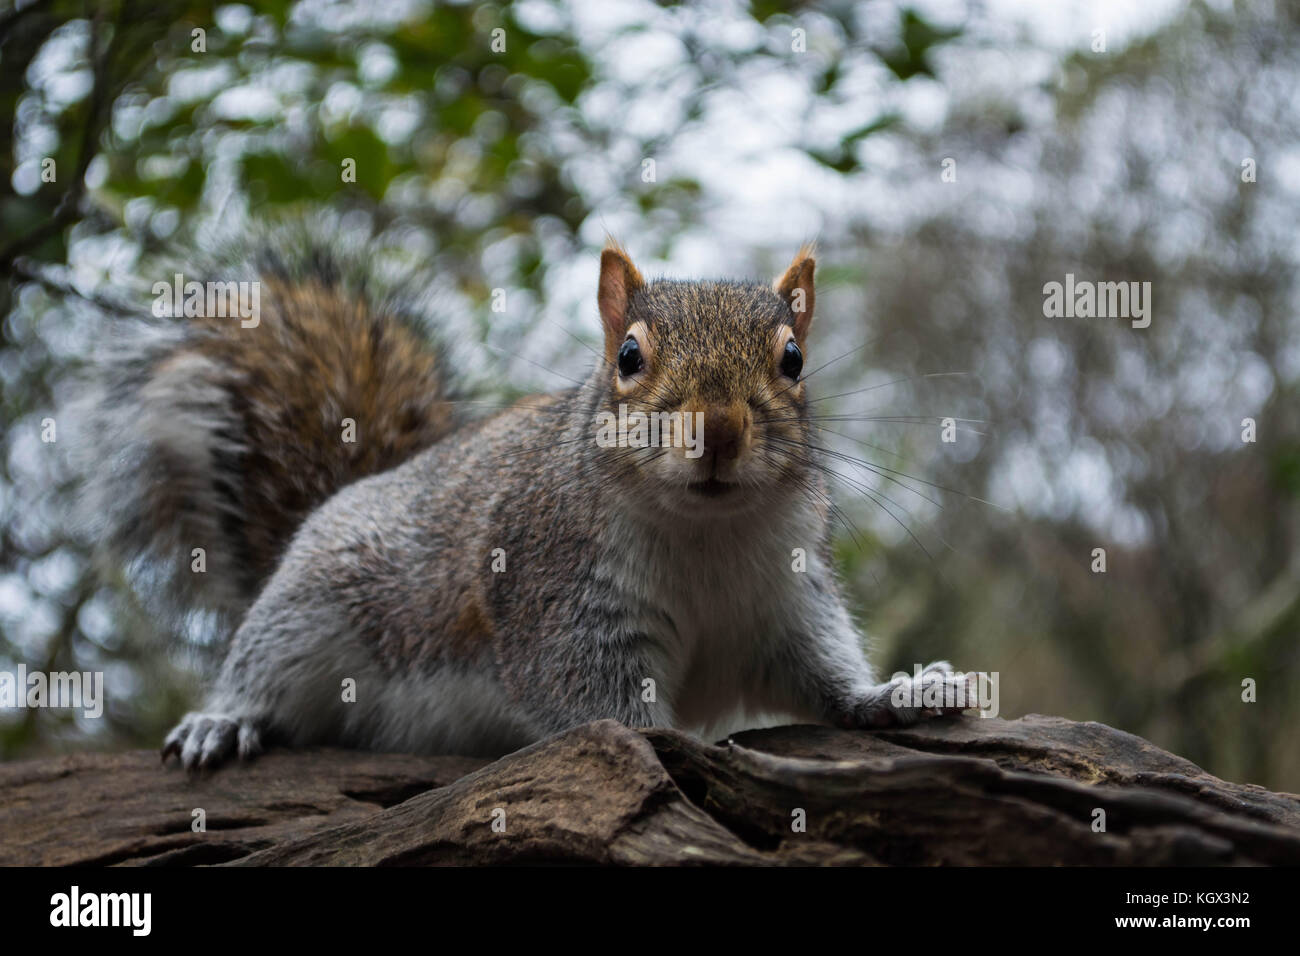 L'écureuil gris dans une forêt - tehidy, Cornwall, uk Banque D'Images